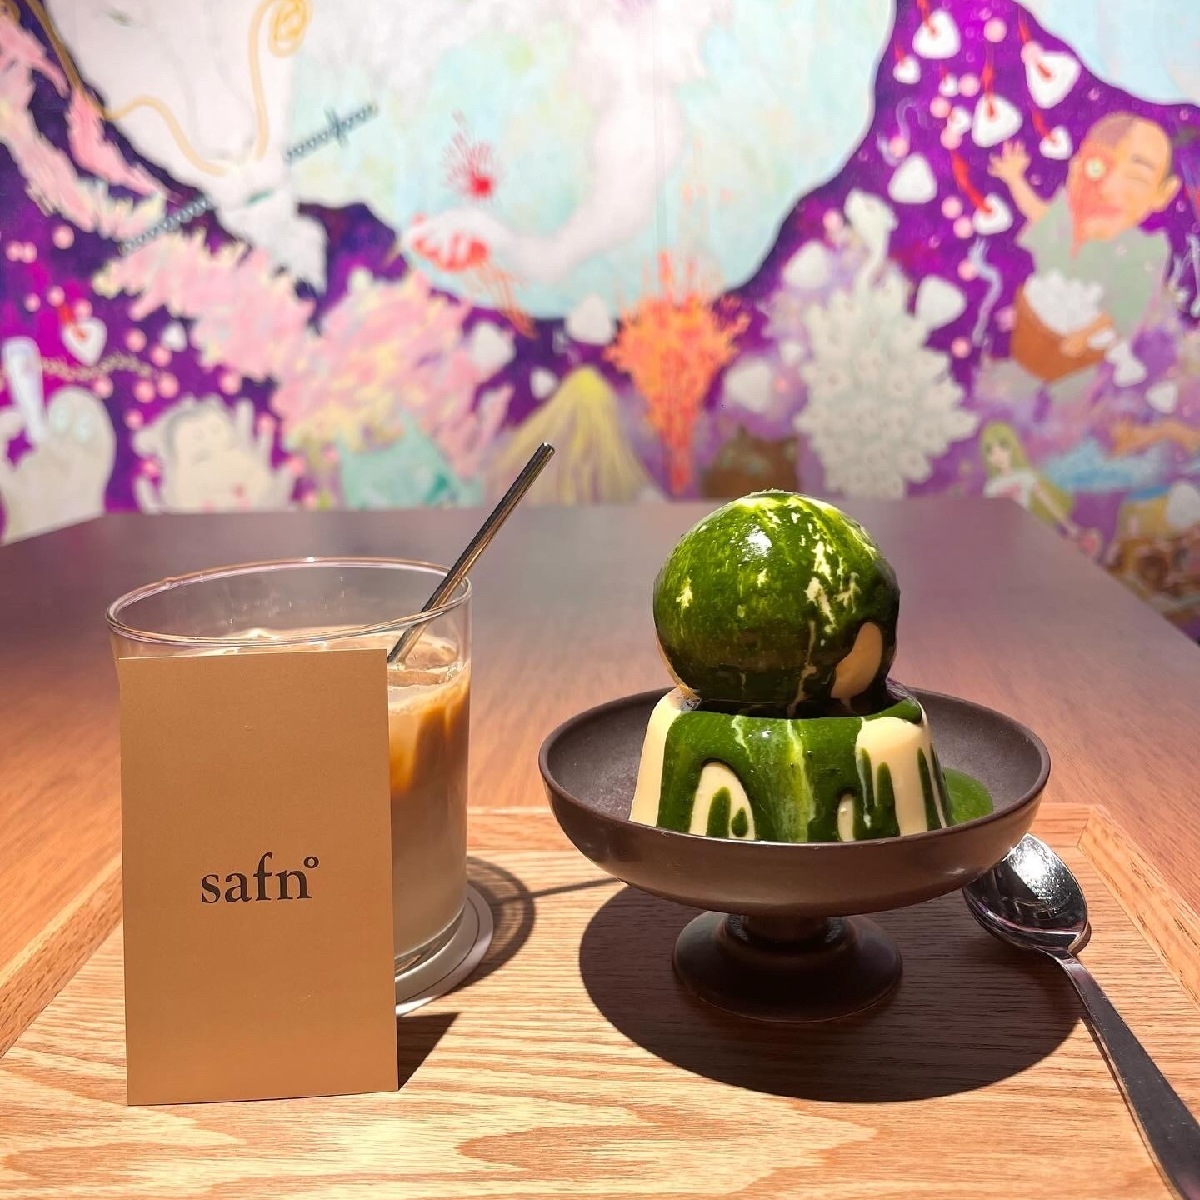 【浅草】芸術の秋に行きたいアートカフェ『Safn°』